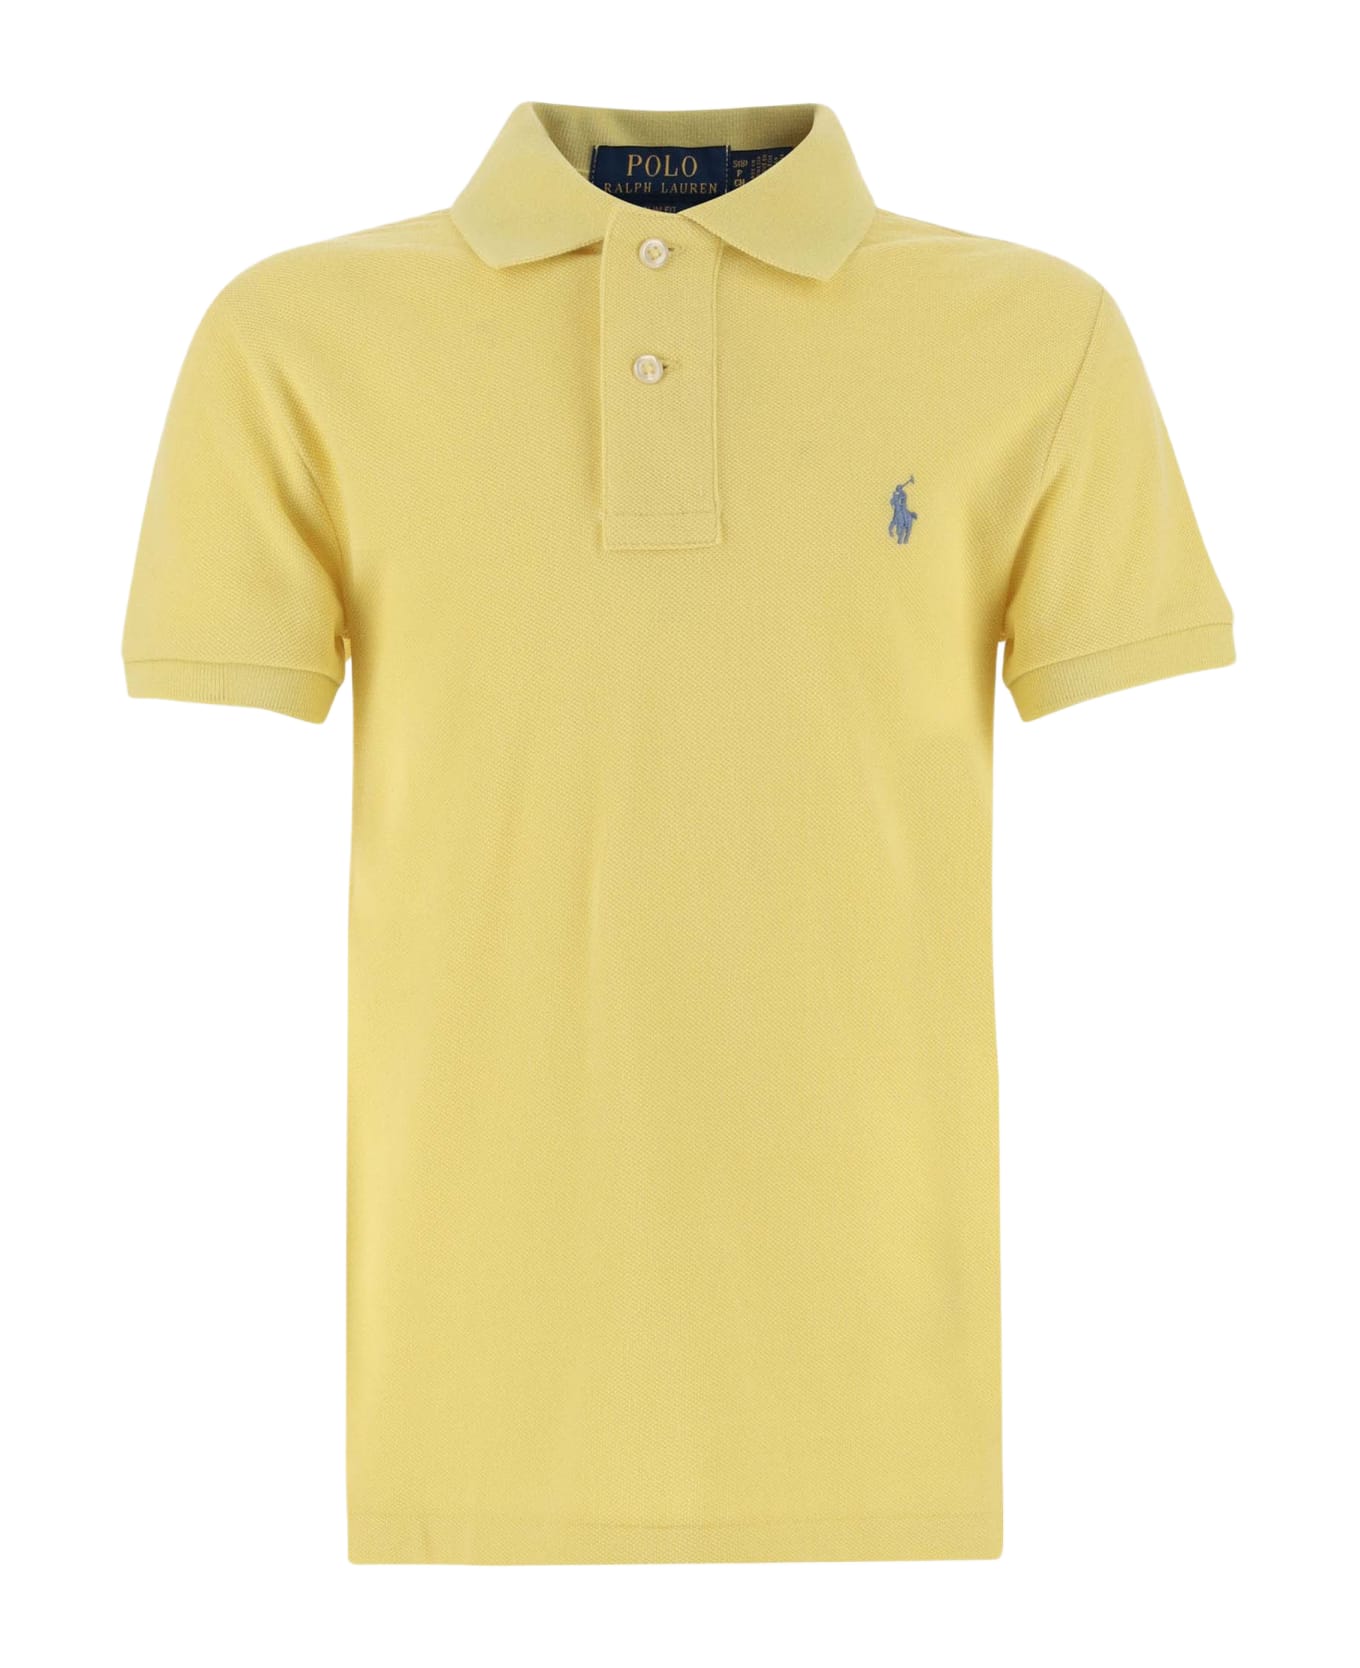 Polo Ralph Lauren Cotton Polo Shirt With Logo - Yellow